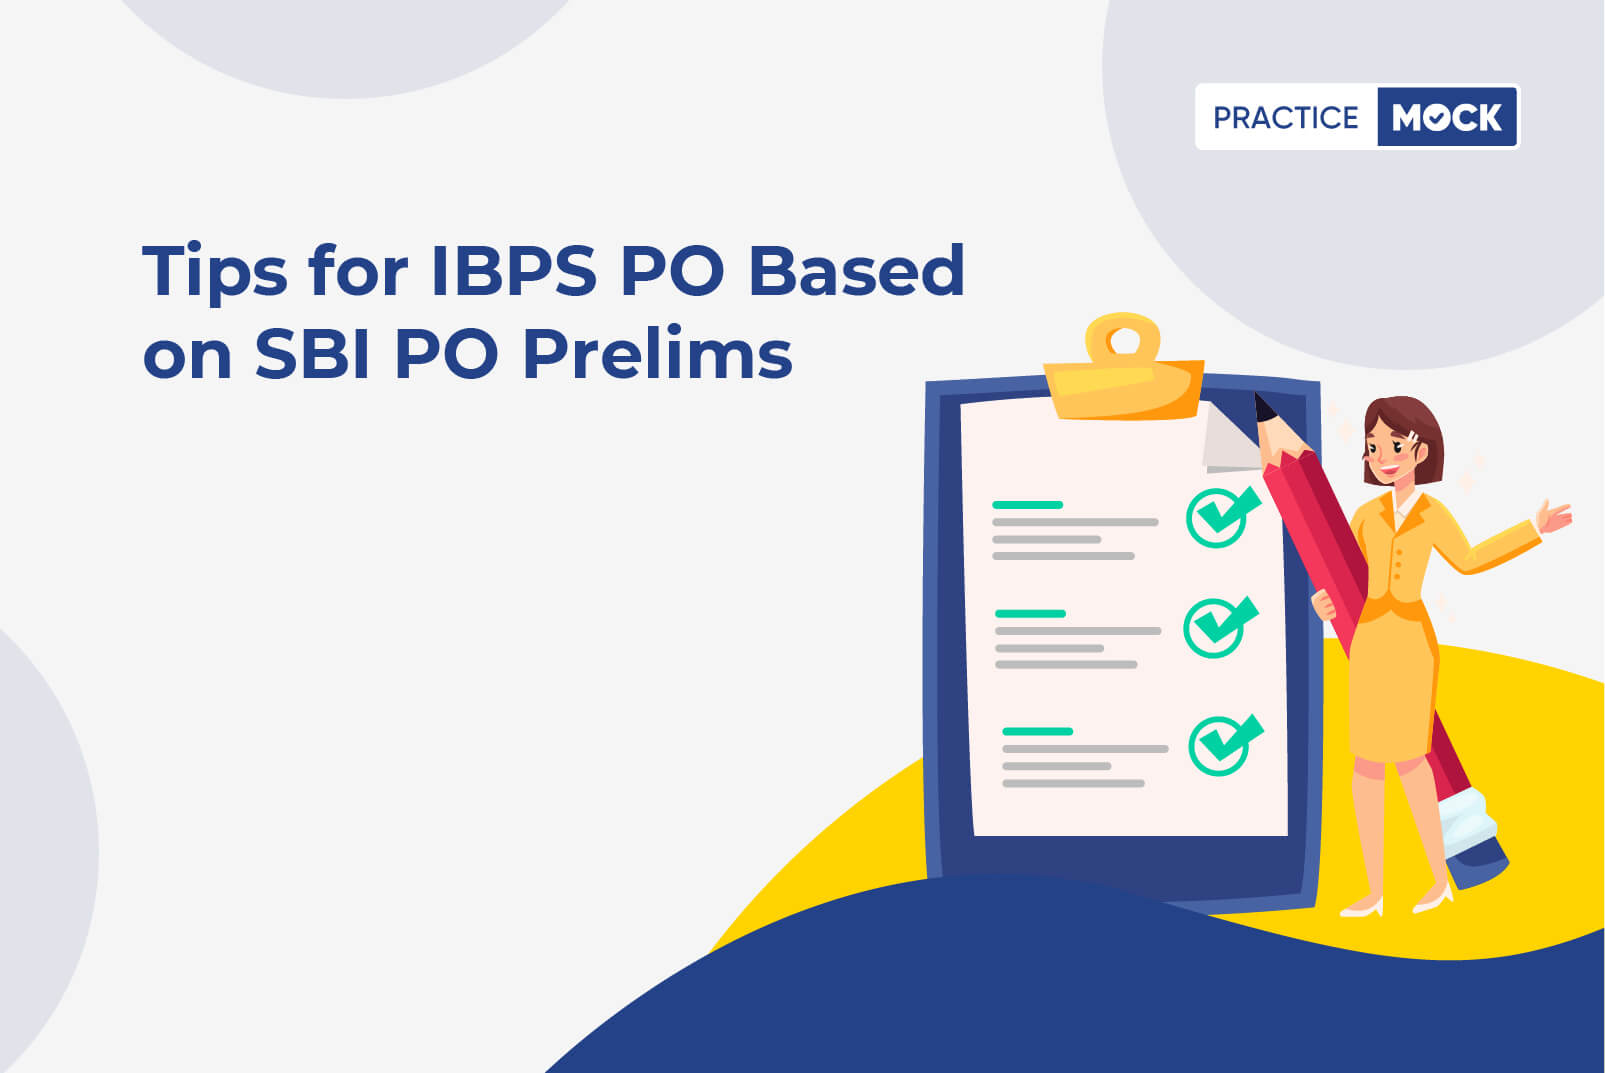 Tips for IBPS PO based on SBI PO Prelims 2021